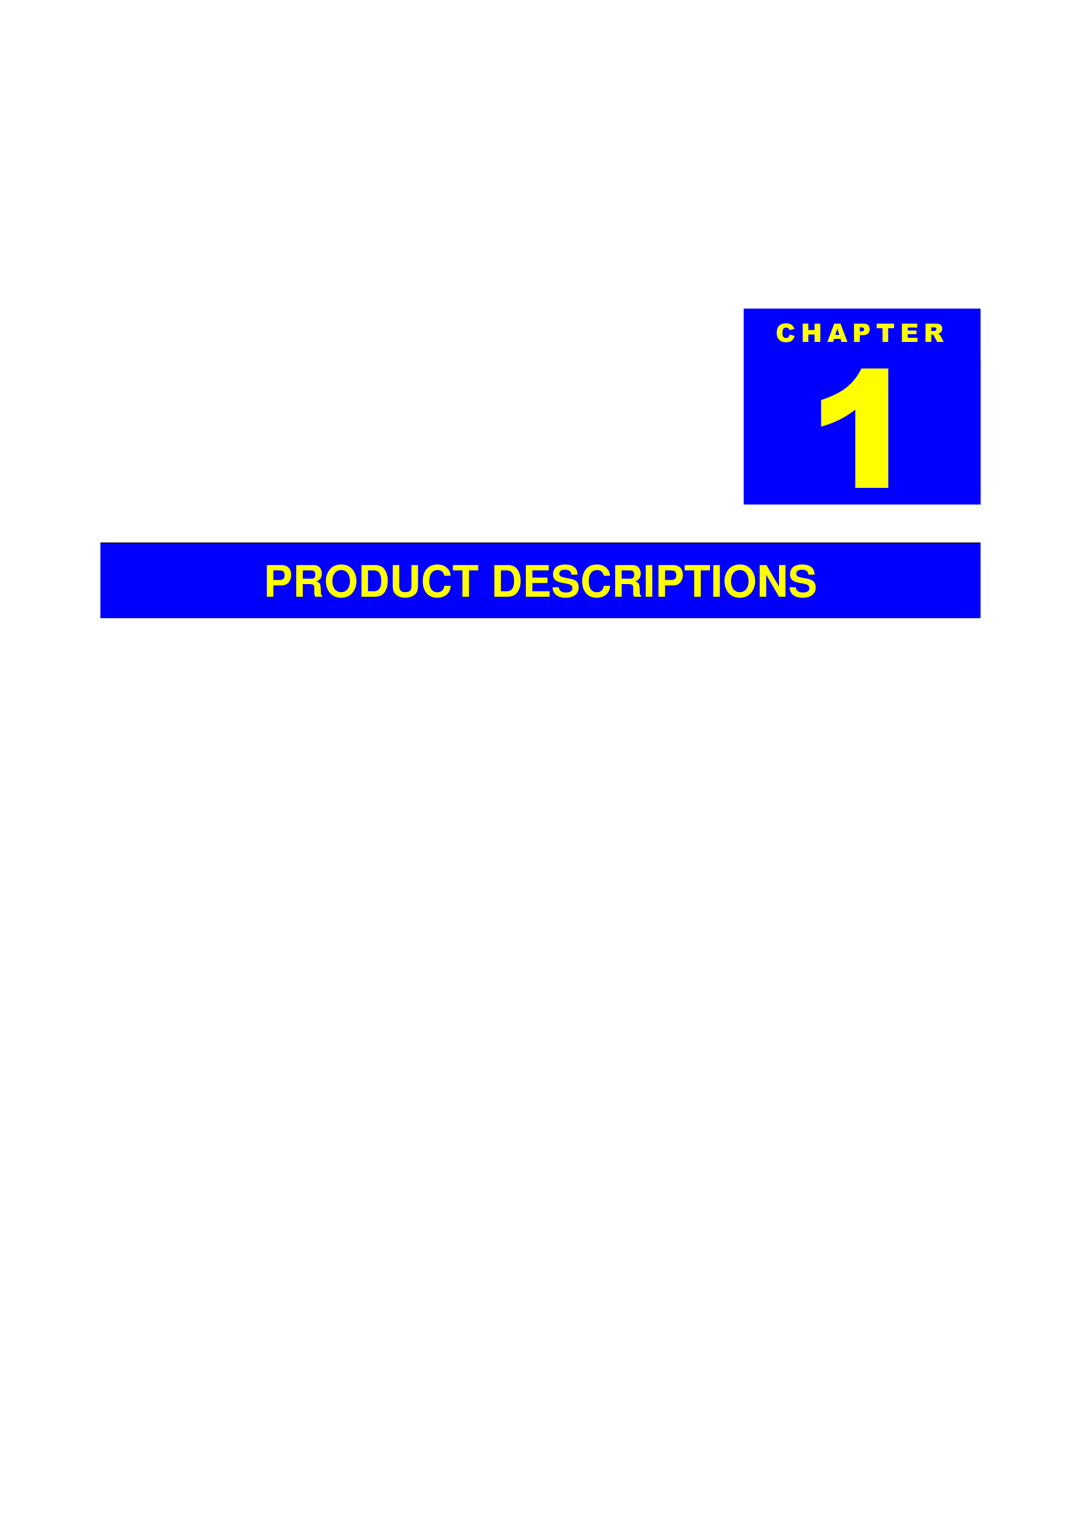 Epson EX, 700 manual Product Descriptions, + $ 